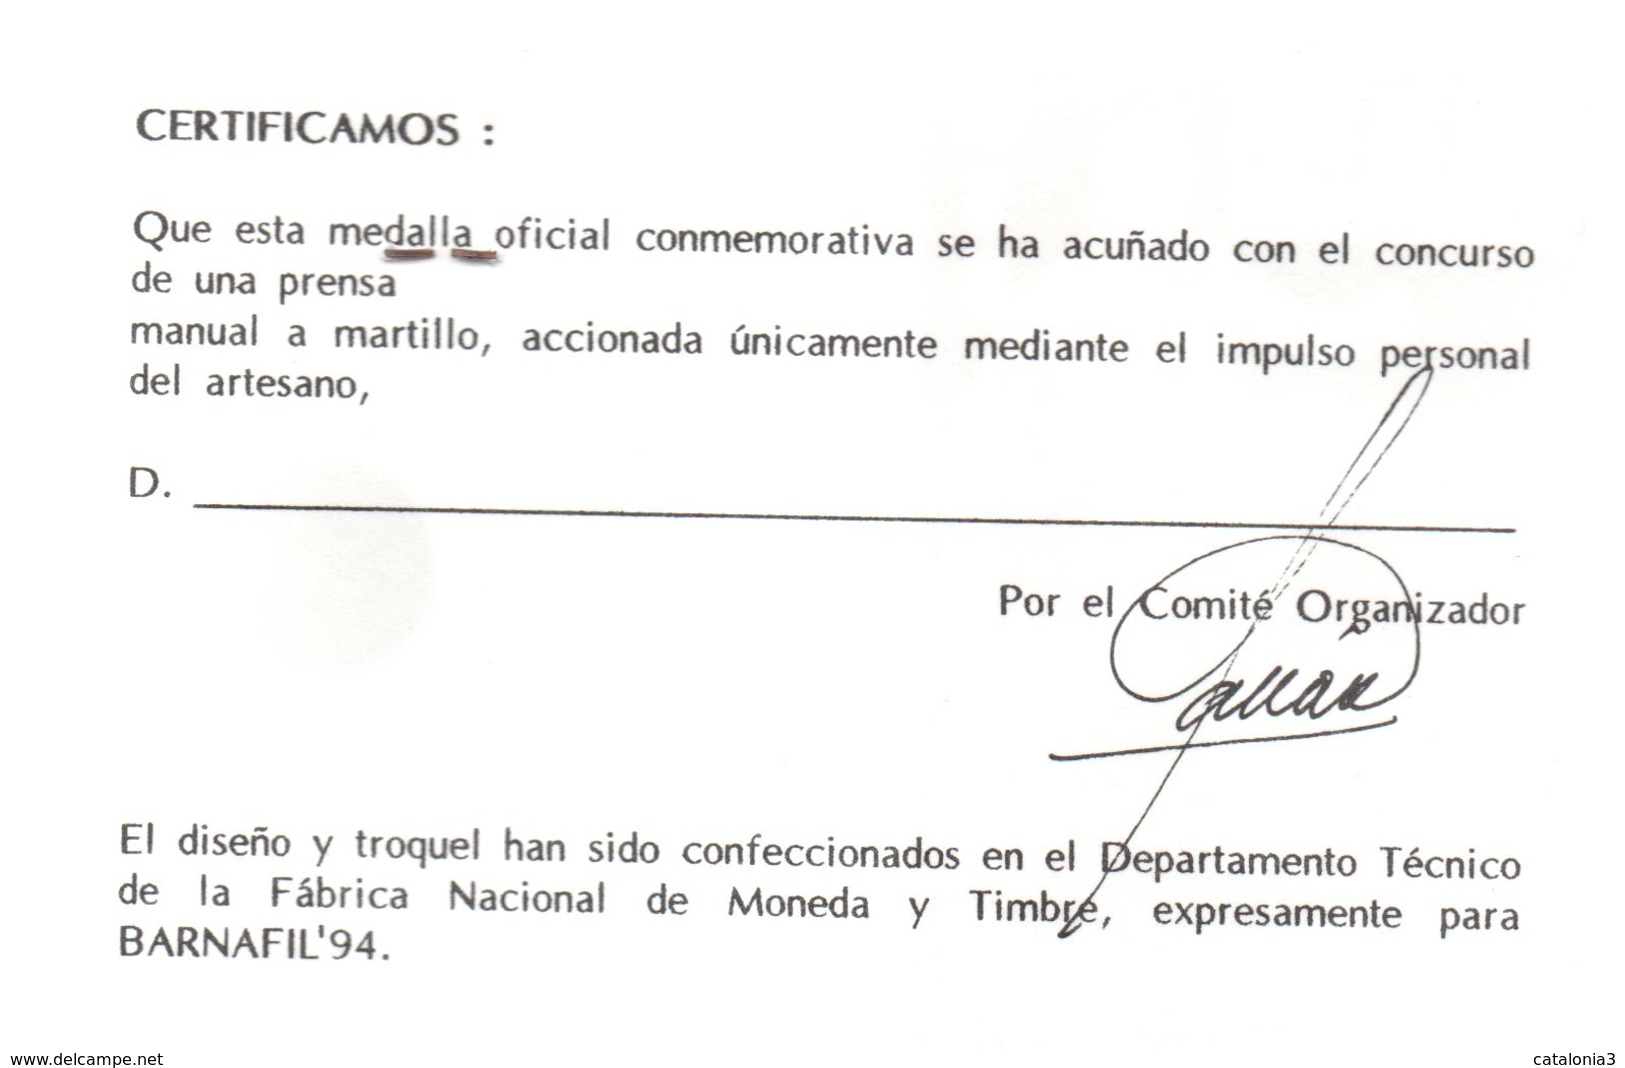 FUTBOL CLUB BARCELONA - MEDALLA CONMOMERATIVA - BARNAFIL 1994 -  Ensayos Y Reacuñaciones